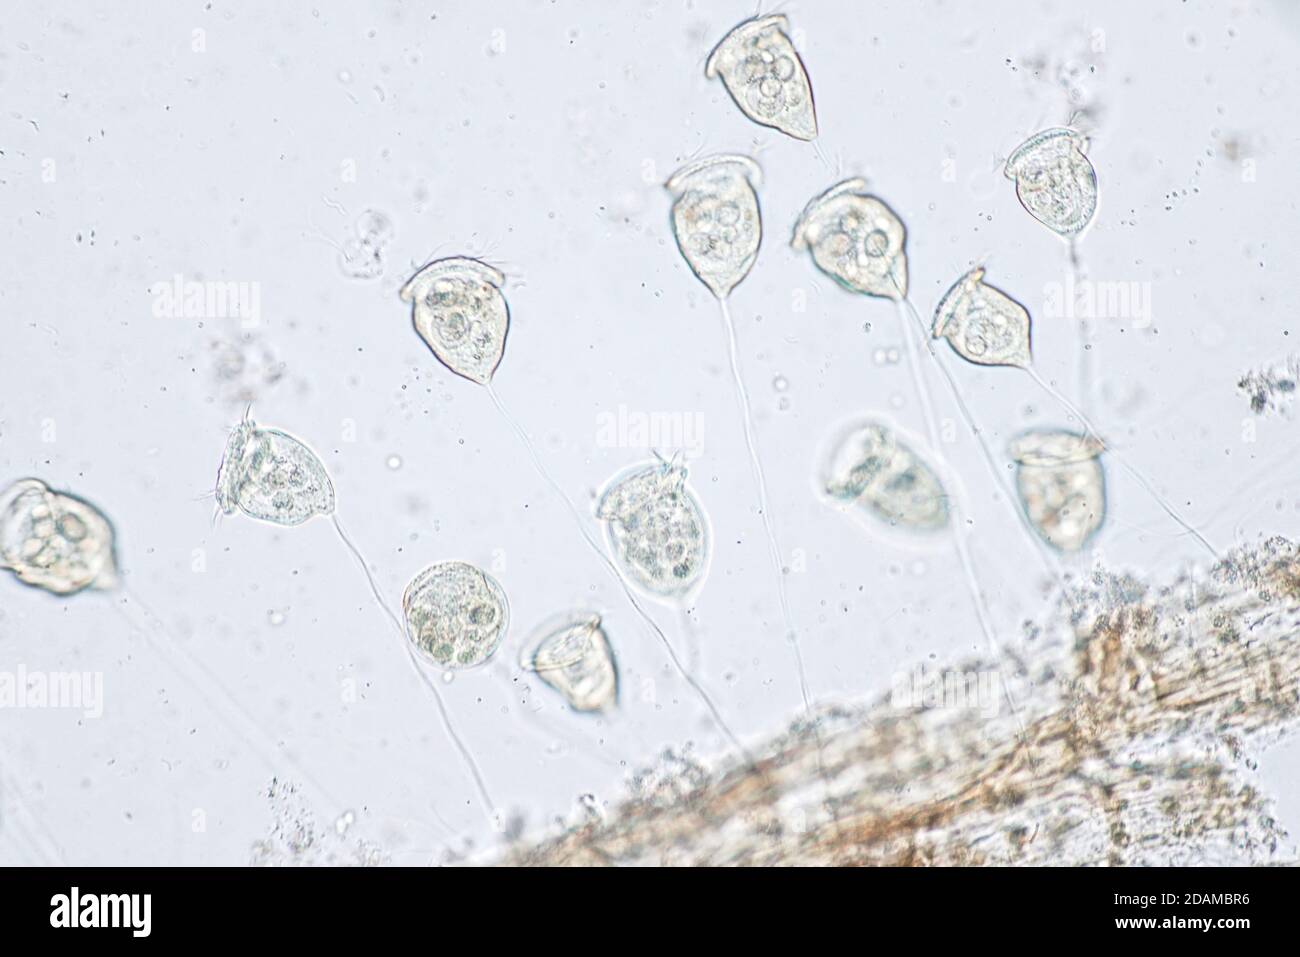 Vorticella protozoa, micrografía ligera. Foto de stock